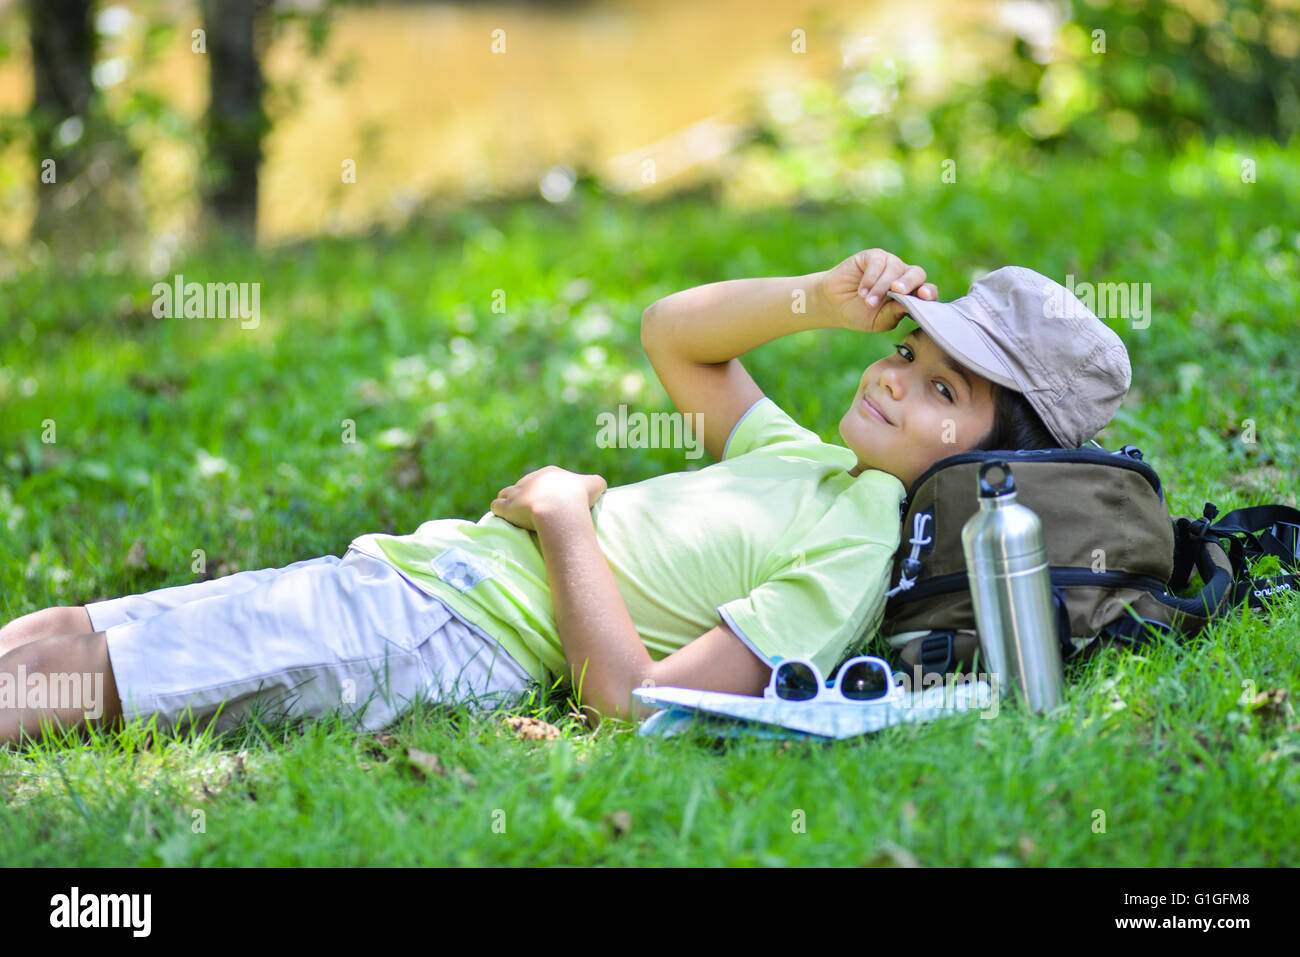 Jeune garçon allongé dans l'herbe dormir, France Banque D'Images